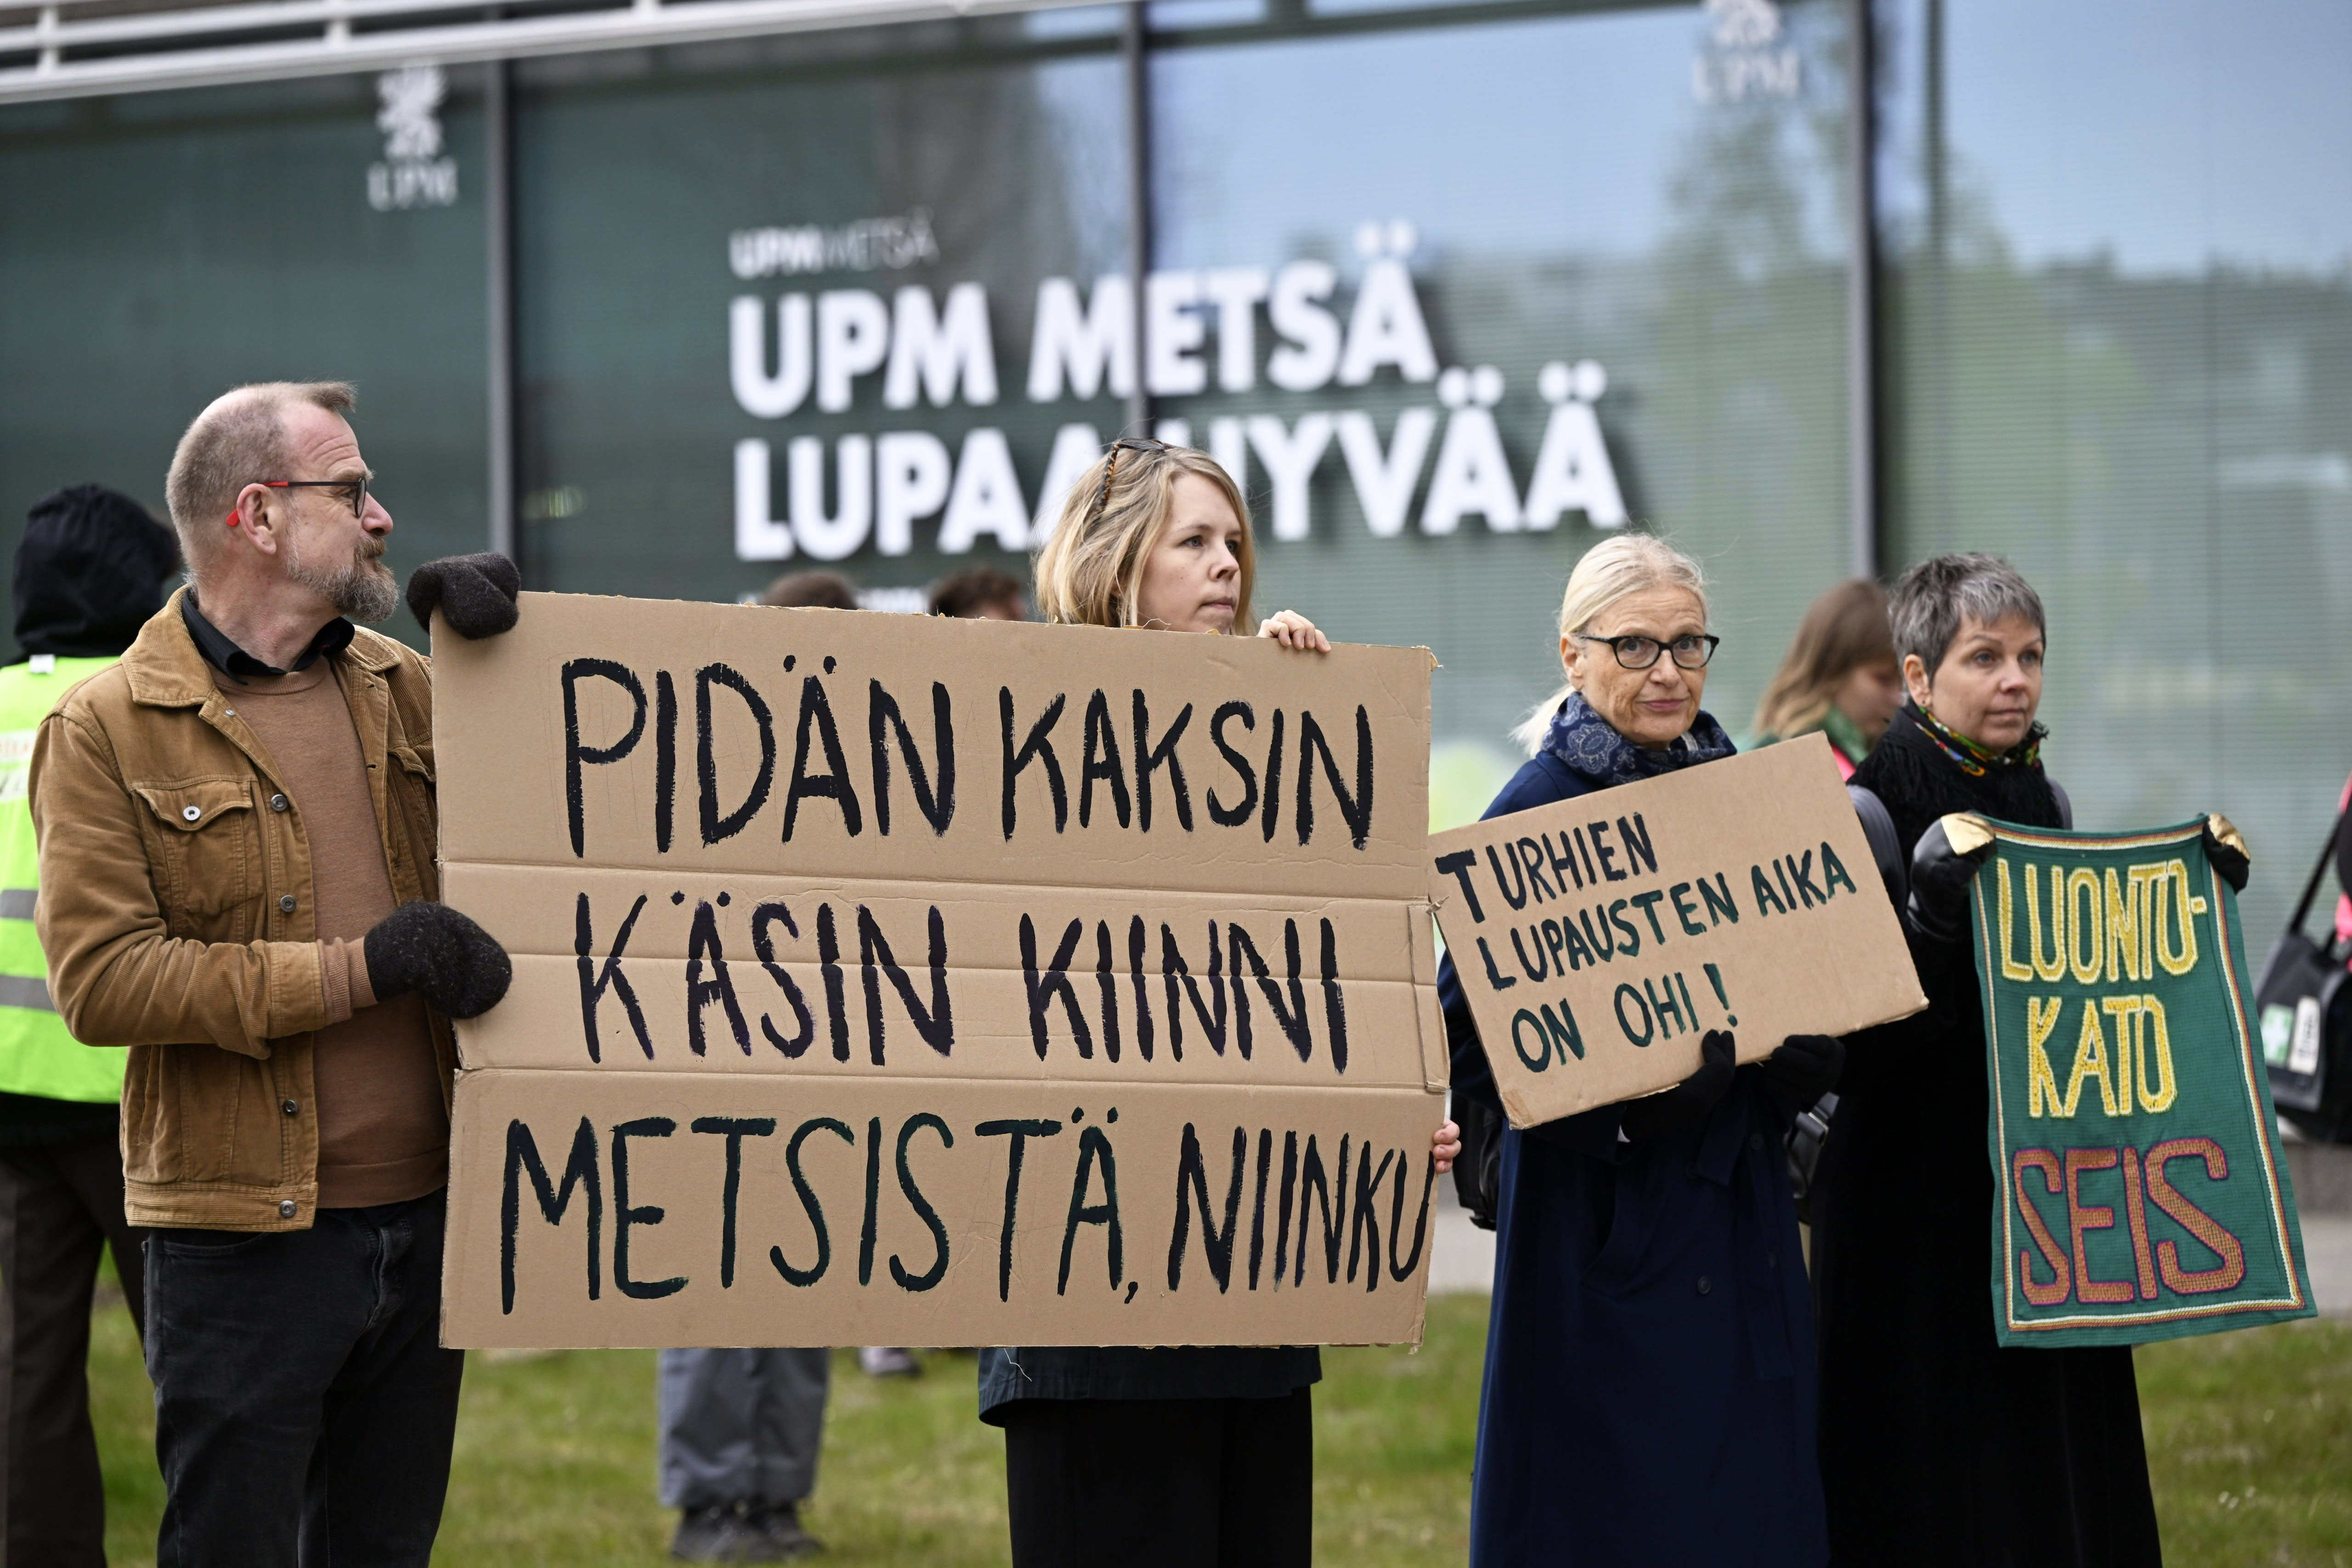 Die Polizei von Helsinki verhaftete drei Klimademonstranten in der UPM-Zentrale